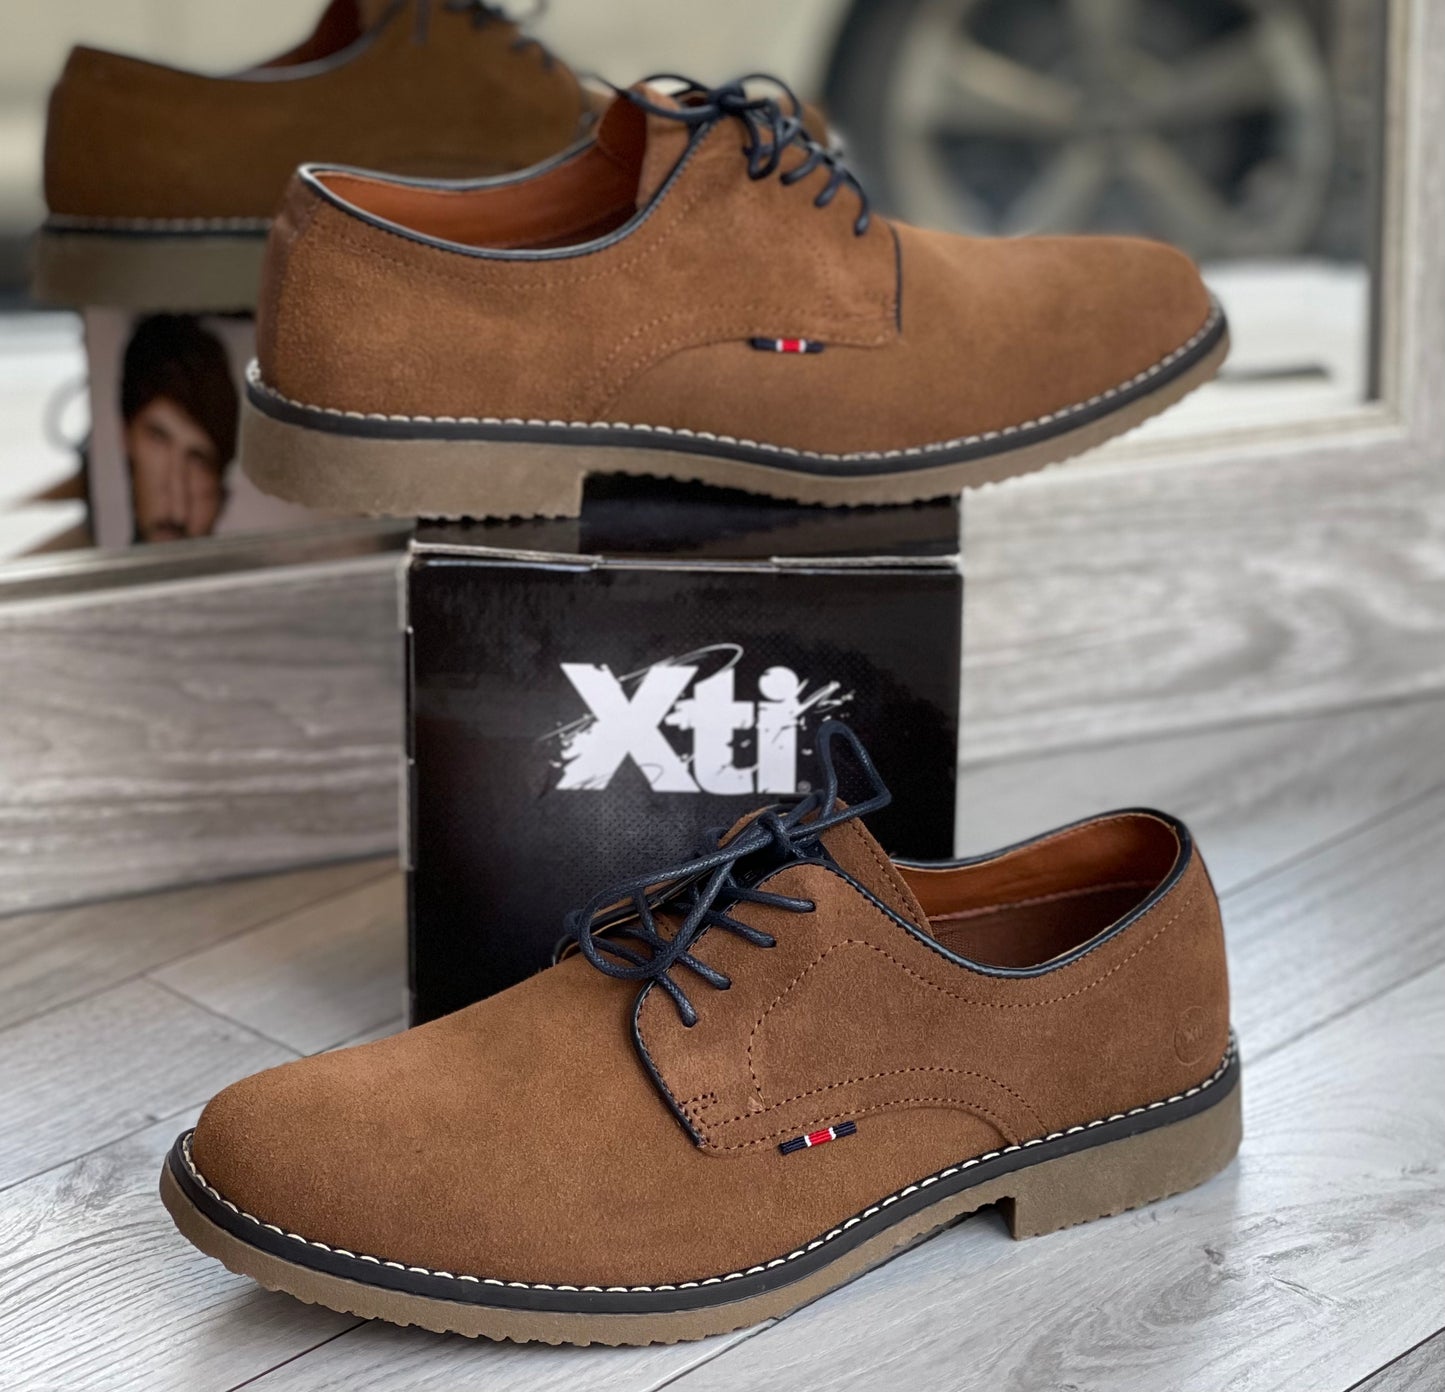 Xti - Men's Camel Leather Shoe